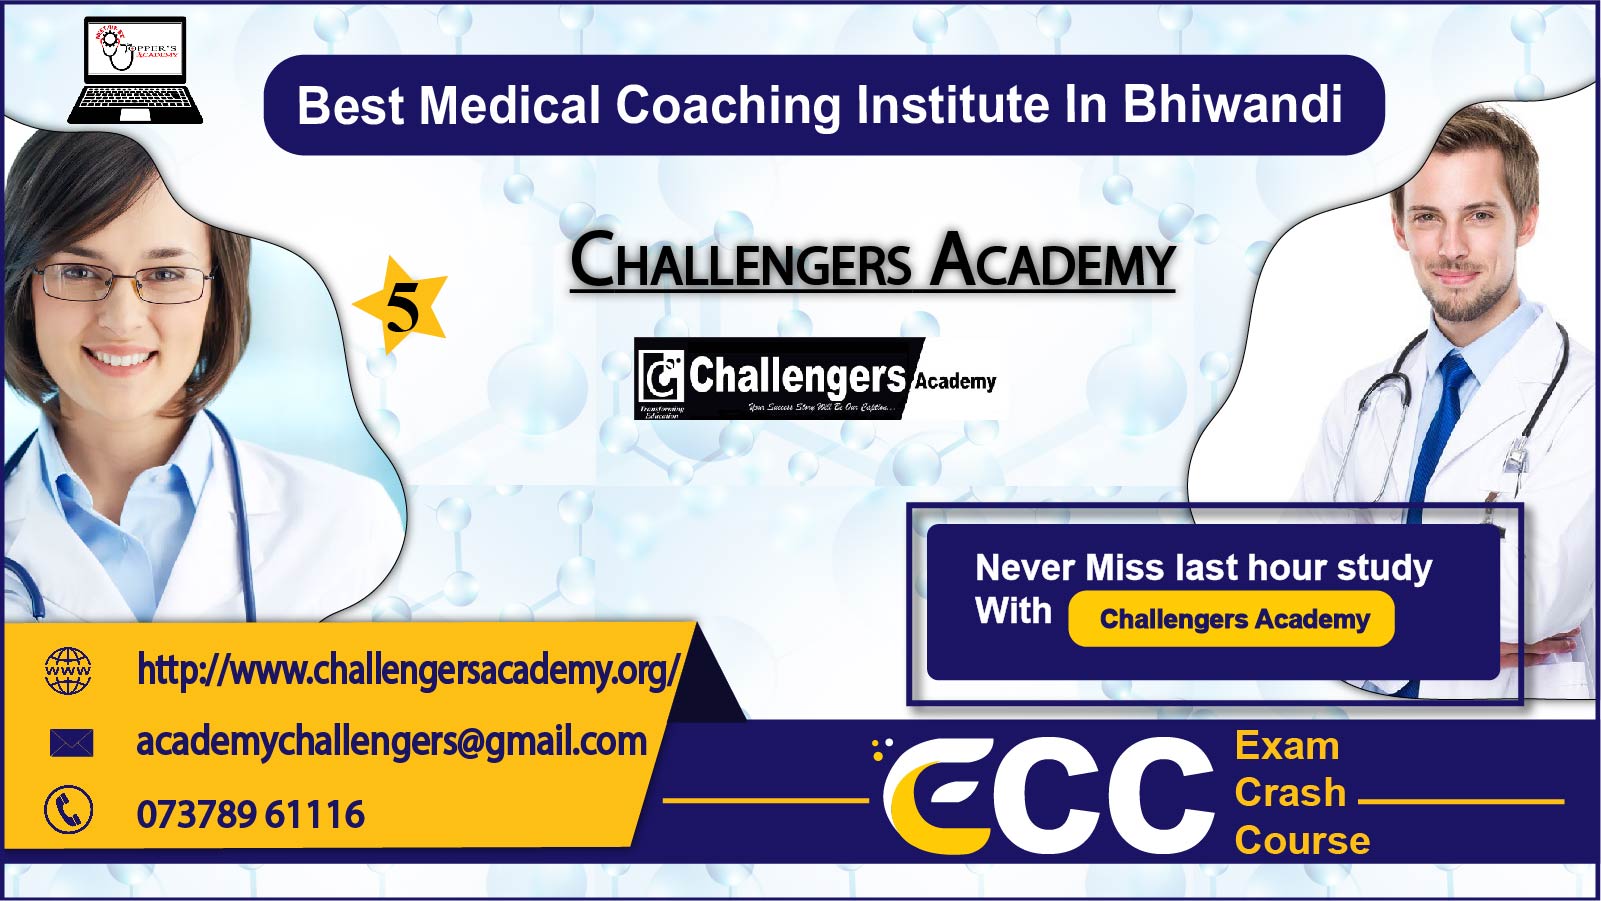 Challengers Academy NEET Coaching in Bhiwandi